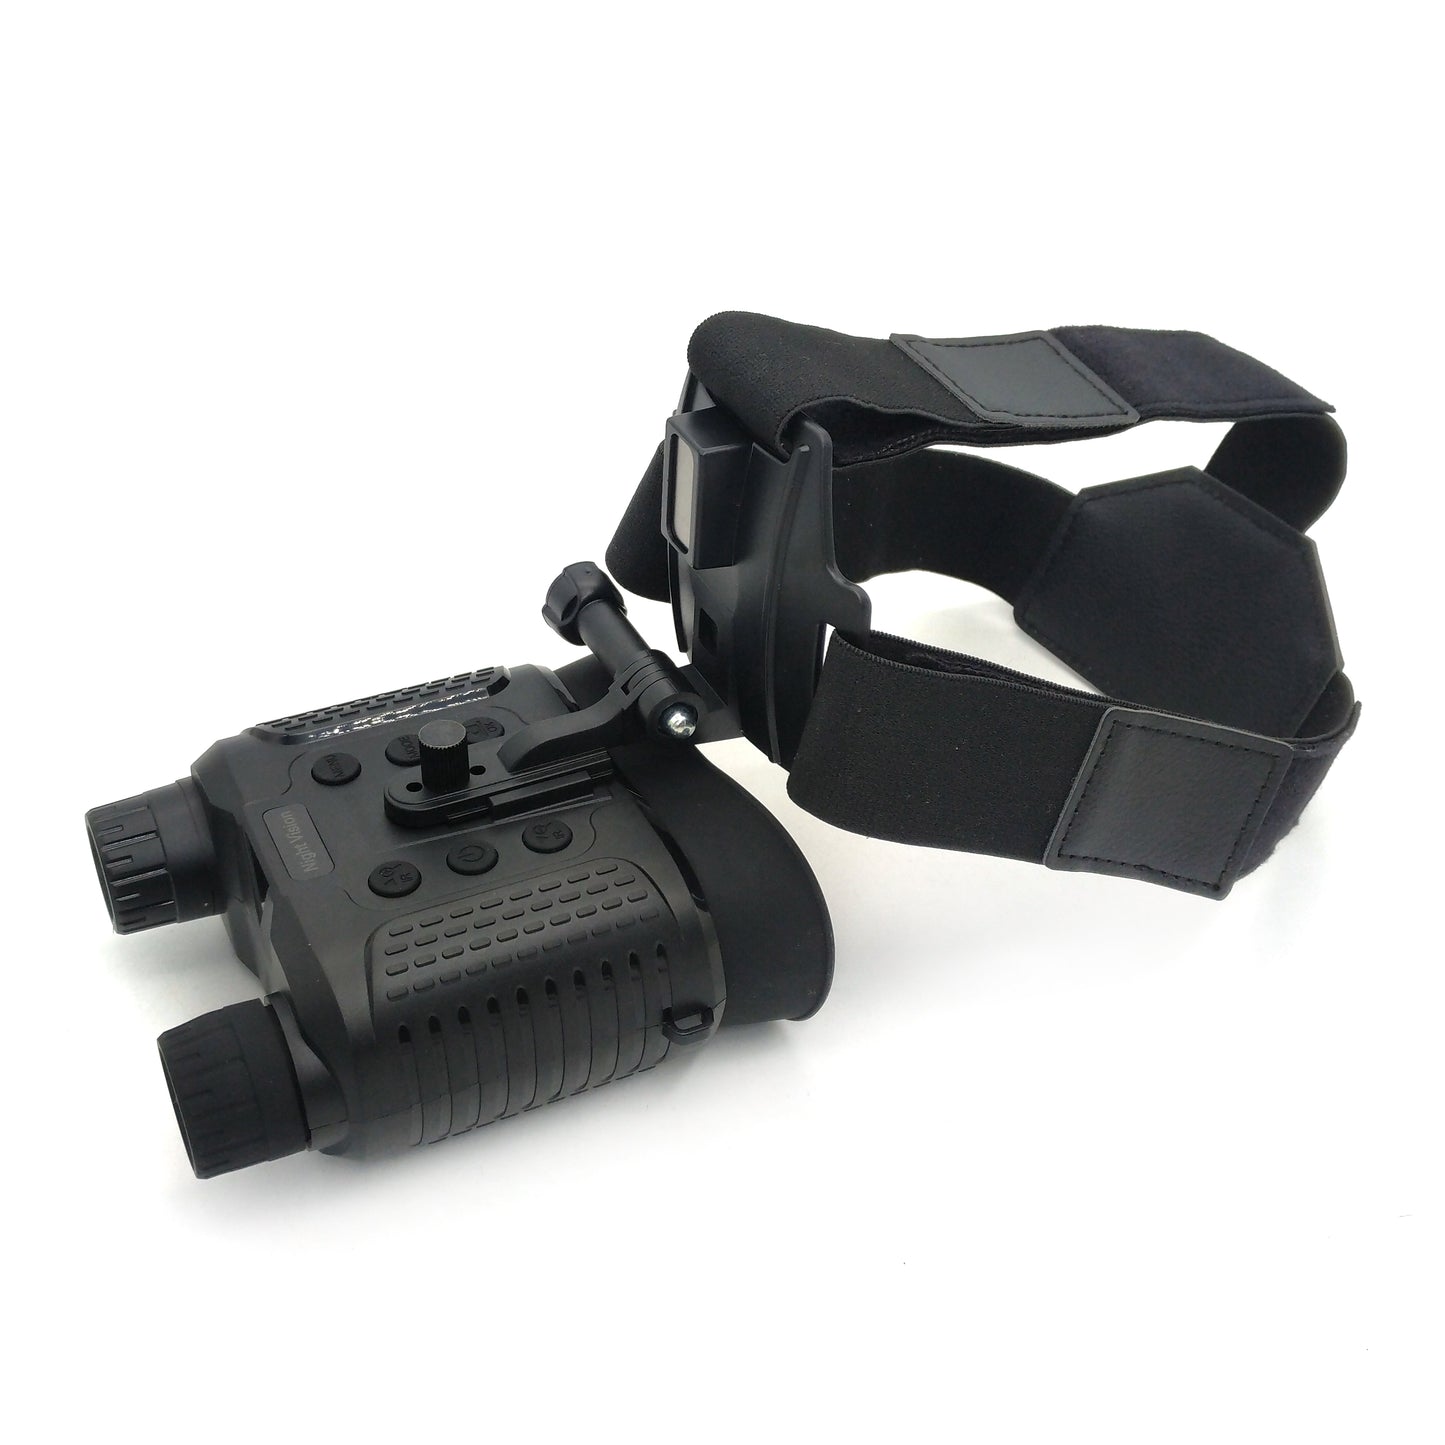 NV8160 Waterproof Hunting Binoculars with Helmet Military Binoculars With Night Vision